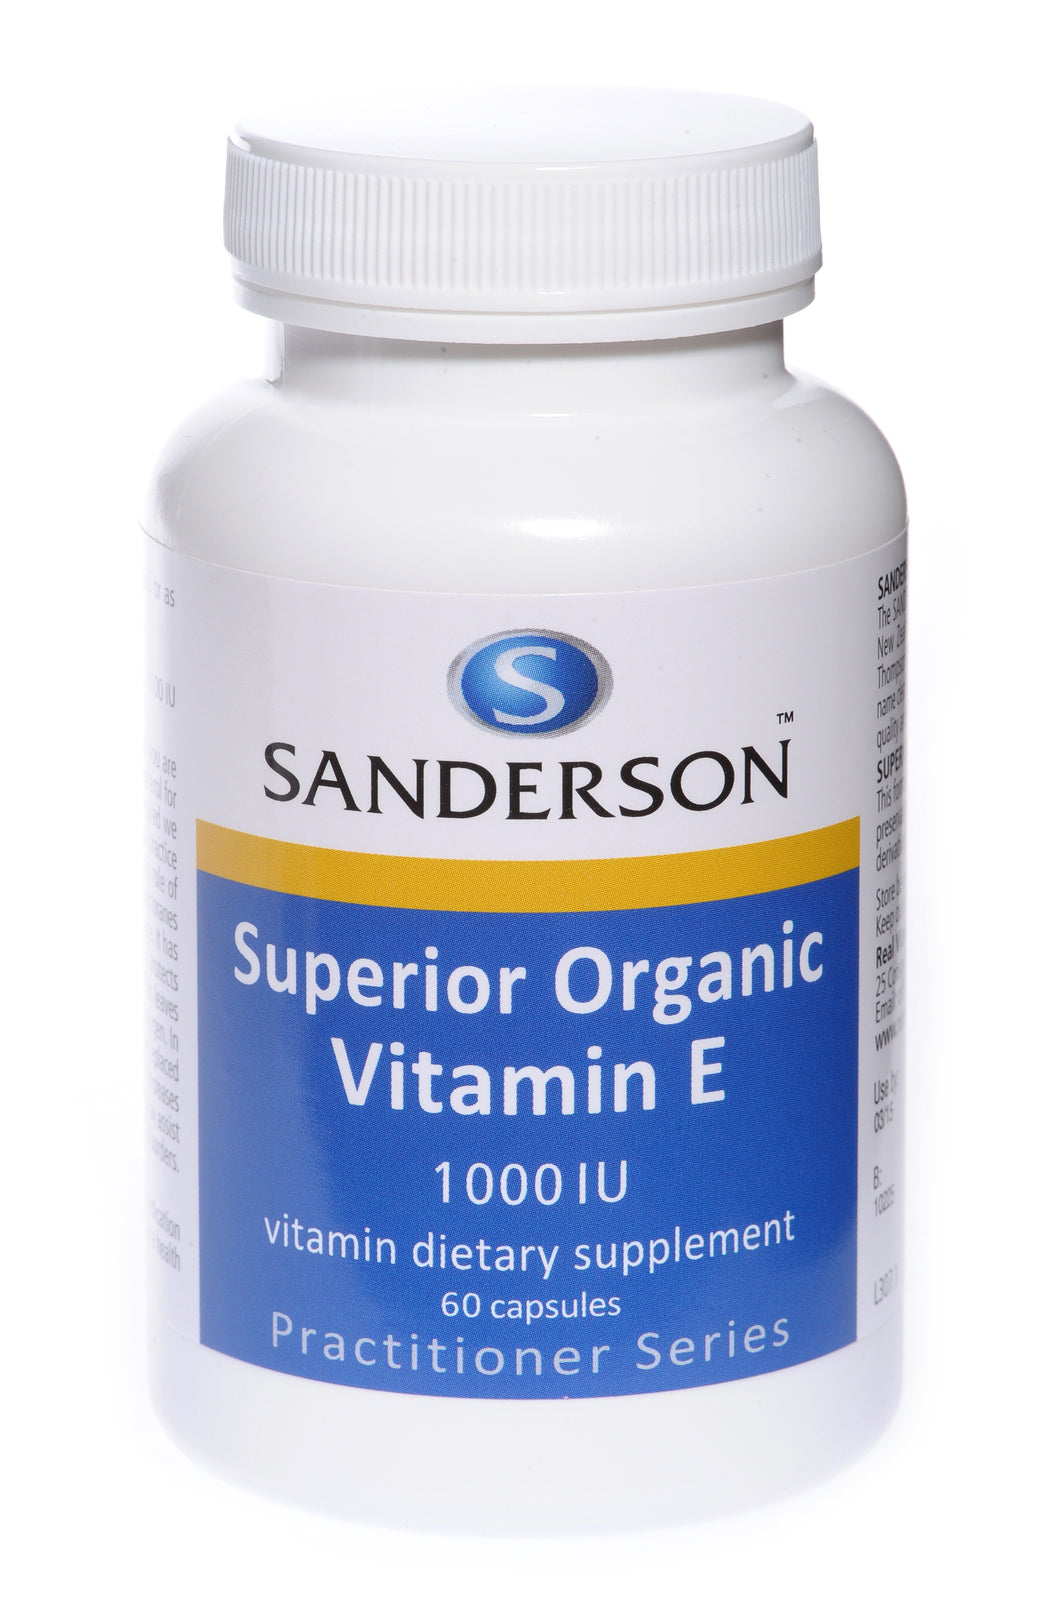 Superior Organic Vitamin E 1000iu (mixed tocopherols) Softgels